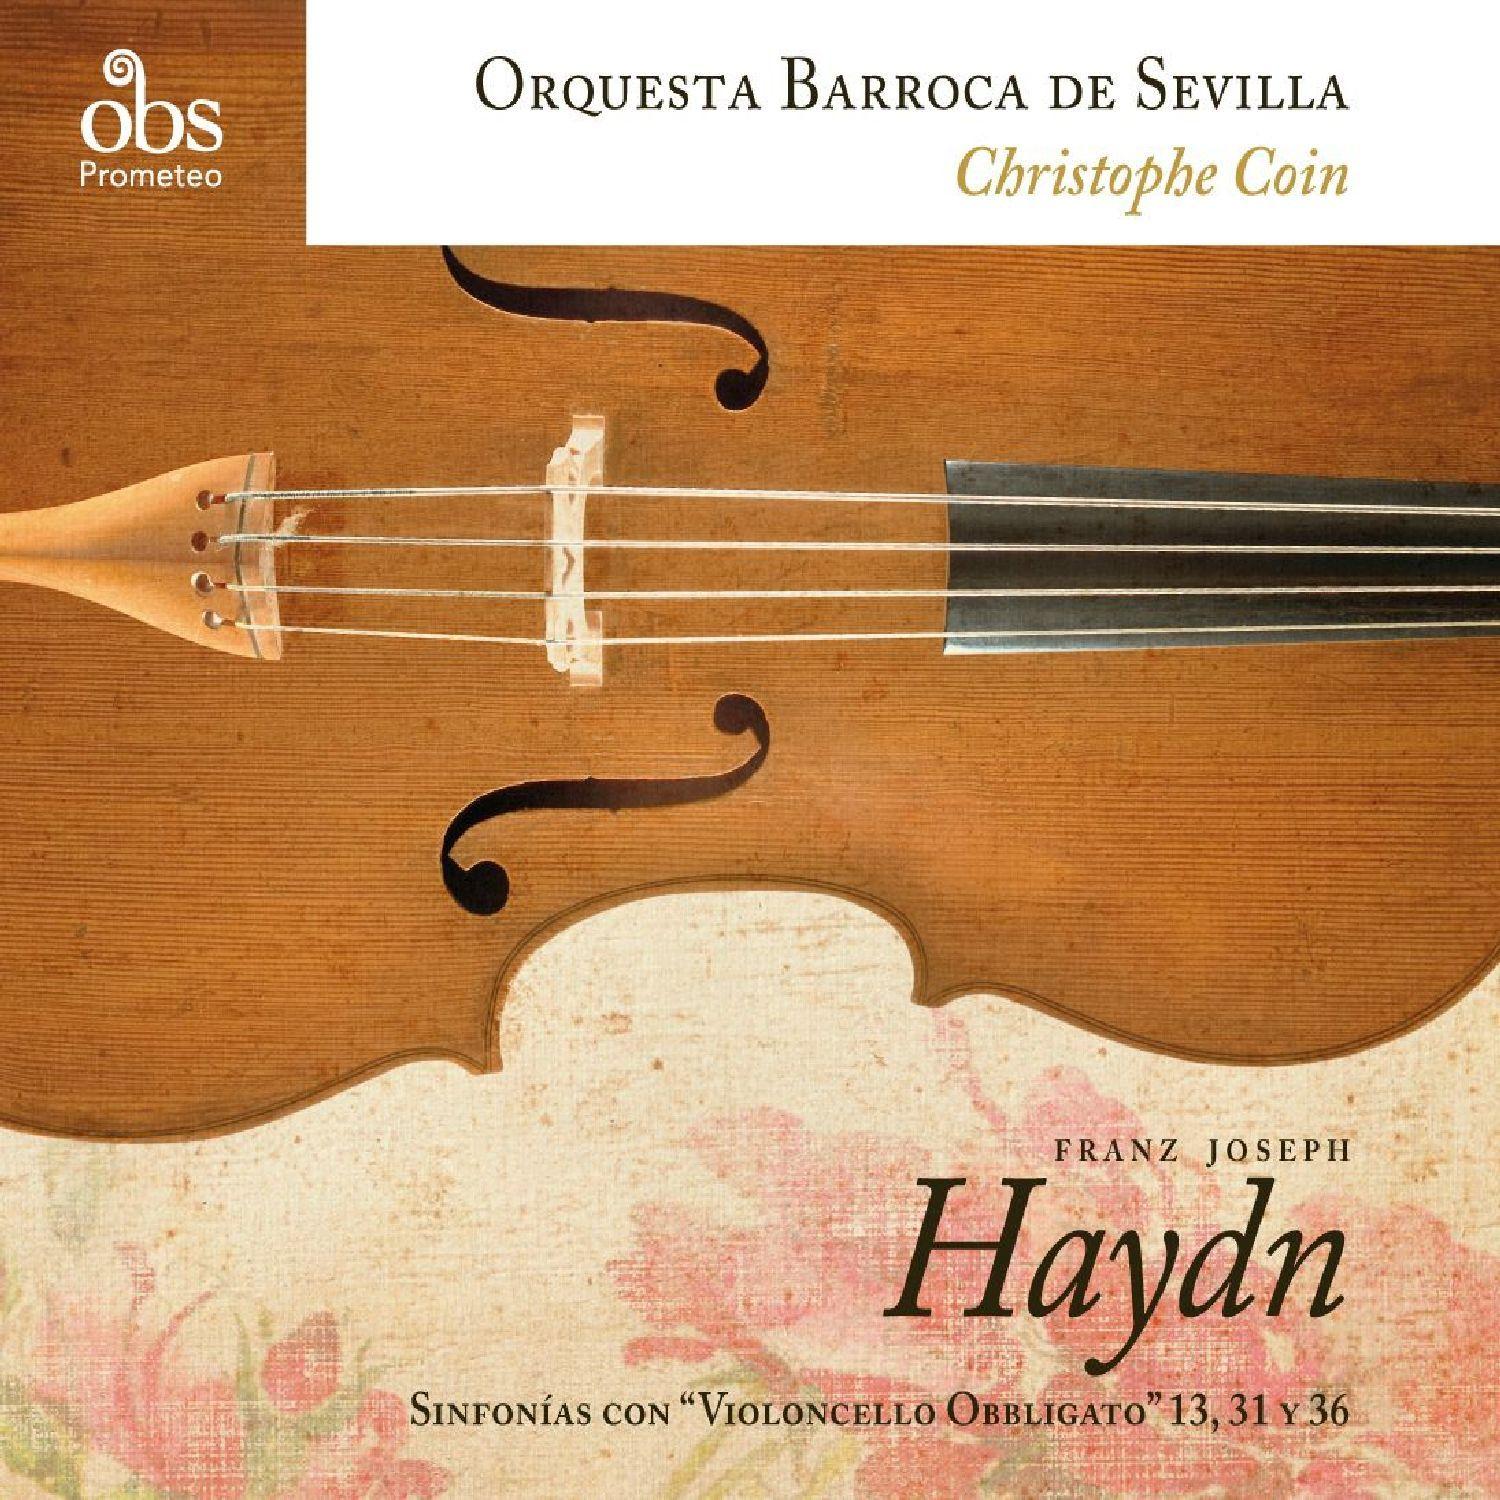 Franz Joseph Haydn: Sinfoni as con Violoncello " Obligatto"